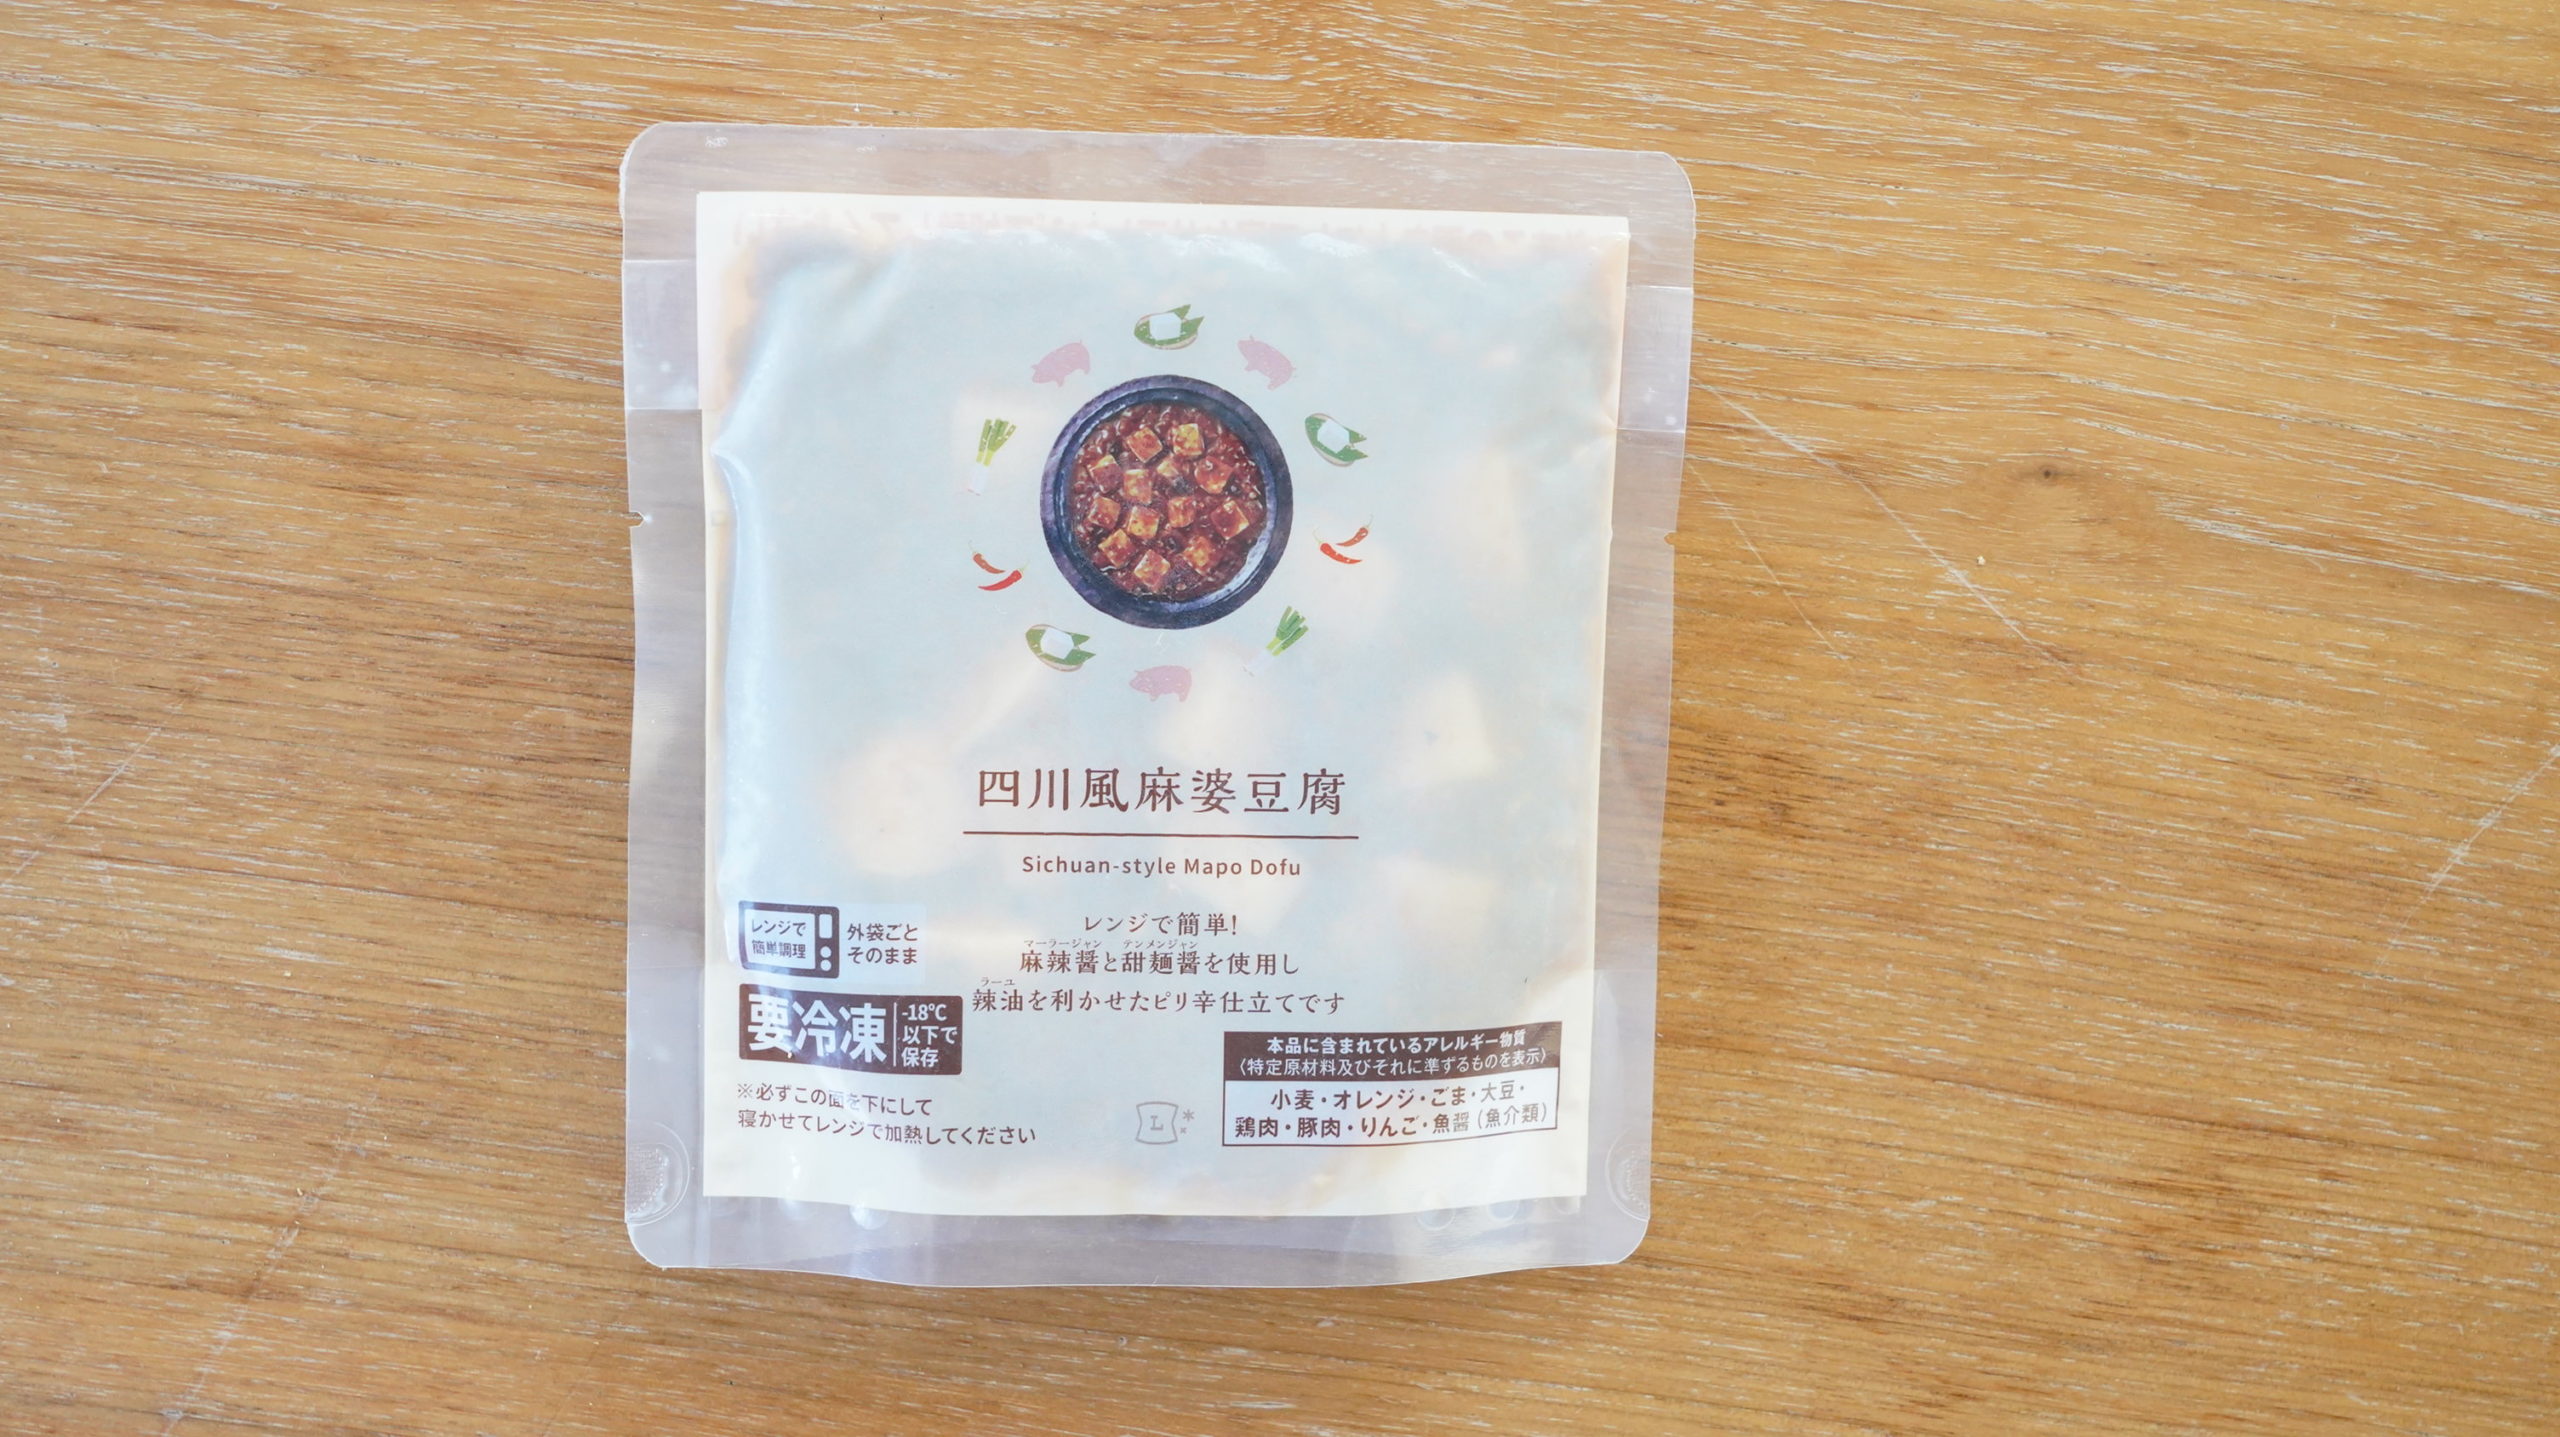 ローソンの冷凍食品「四川風麻婆豆腐」のパッケージの写真